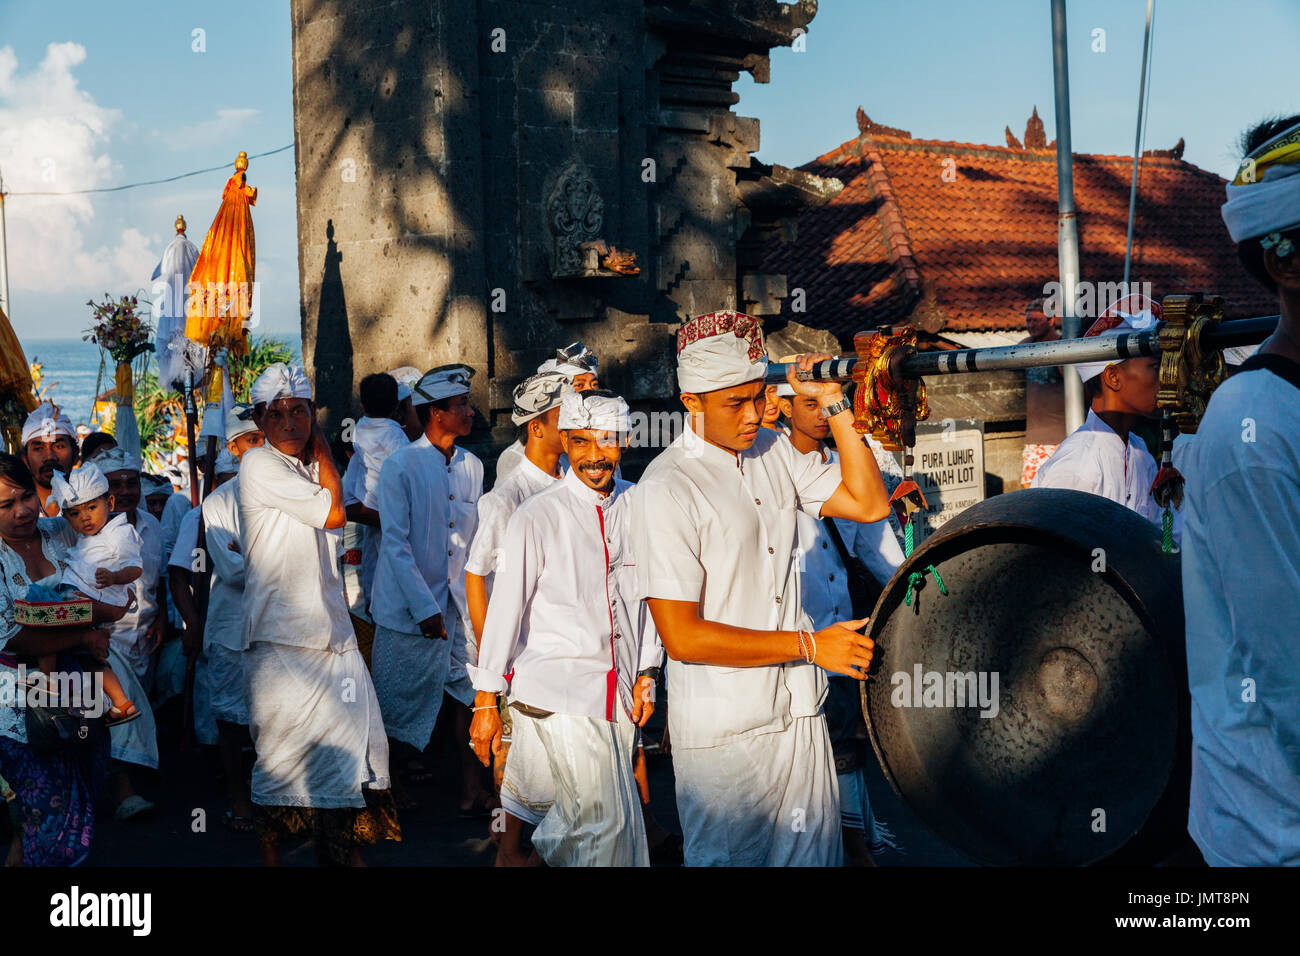 Bali, Indonésie - Mars 07, 2016 : musiciens traditionnels Balinais, prendre part à la procession de cérémonie durant les célébrations du Nouvel An balinais. Banque D'Images